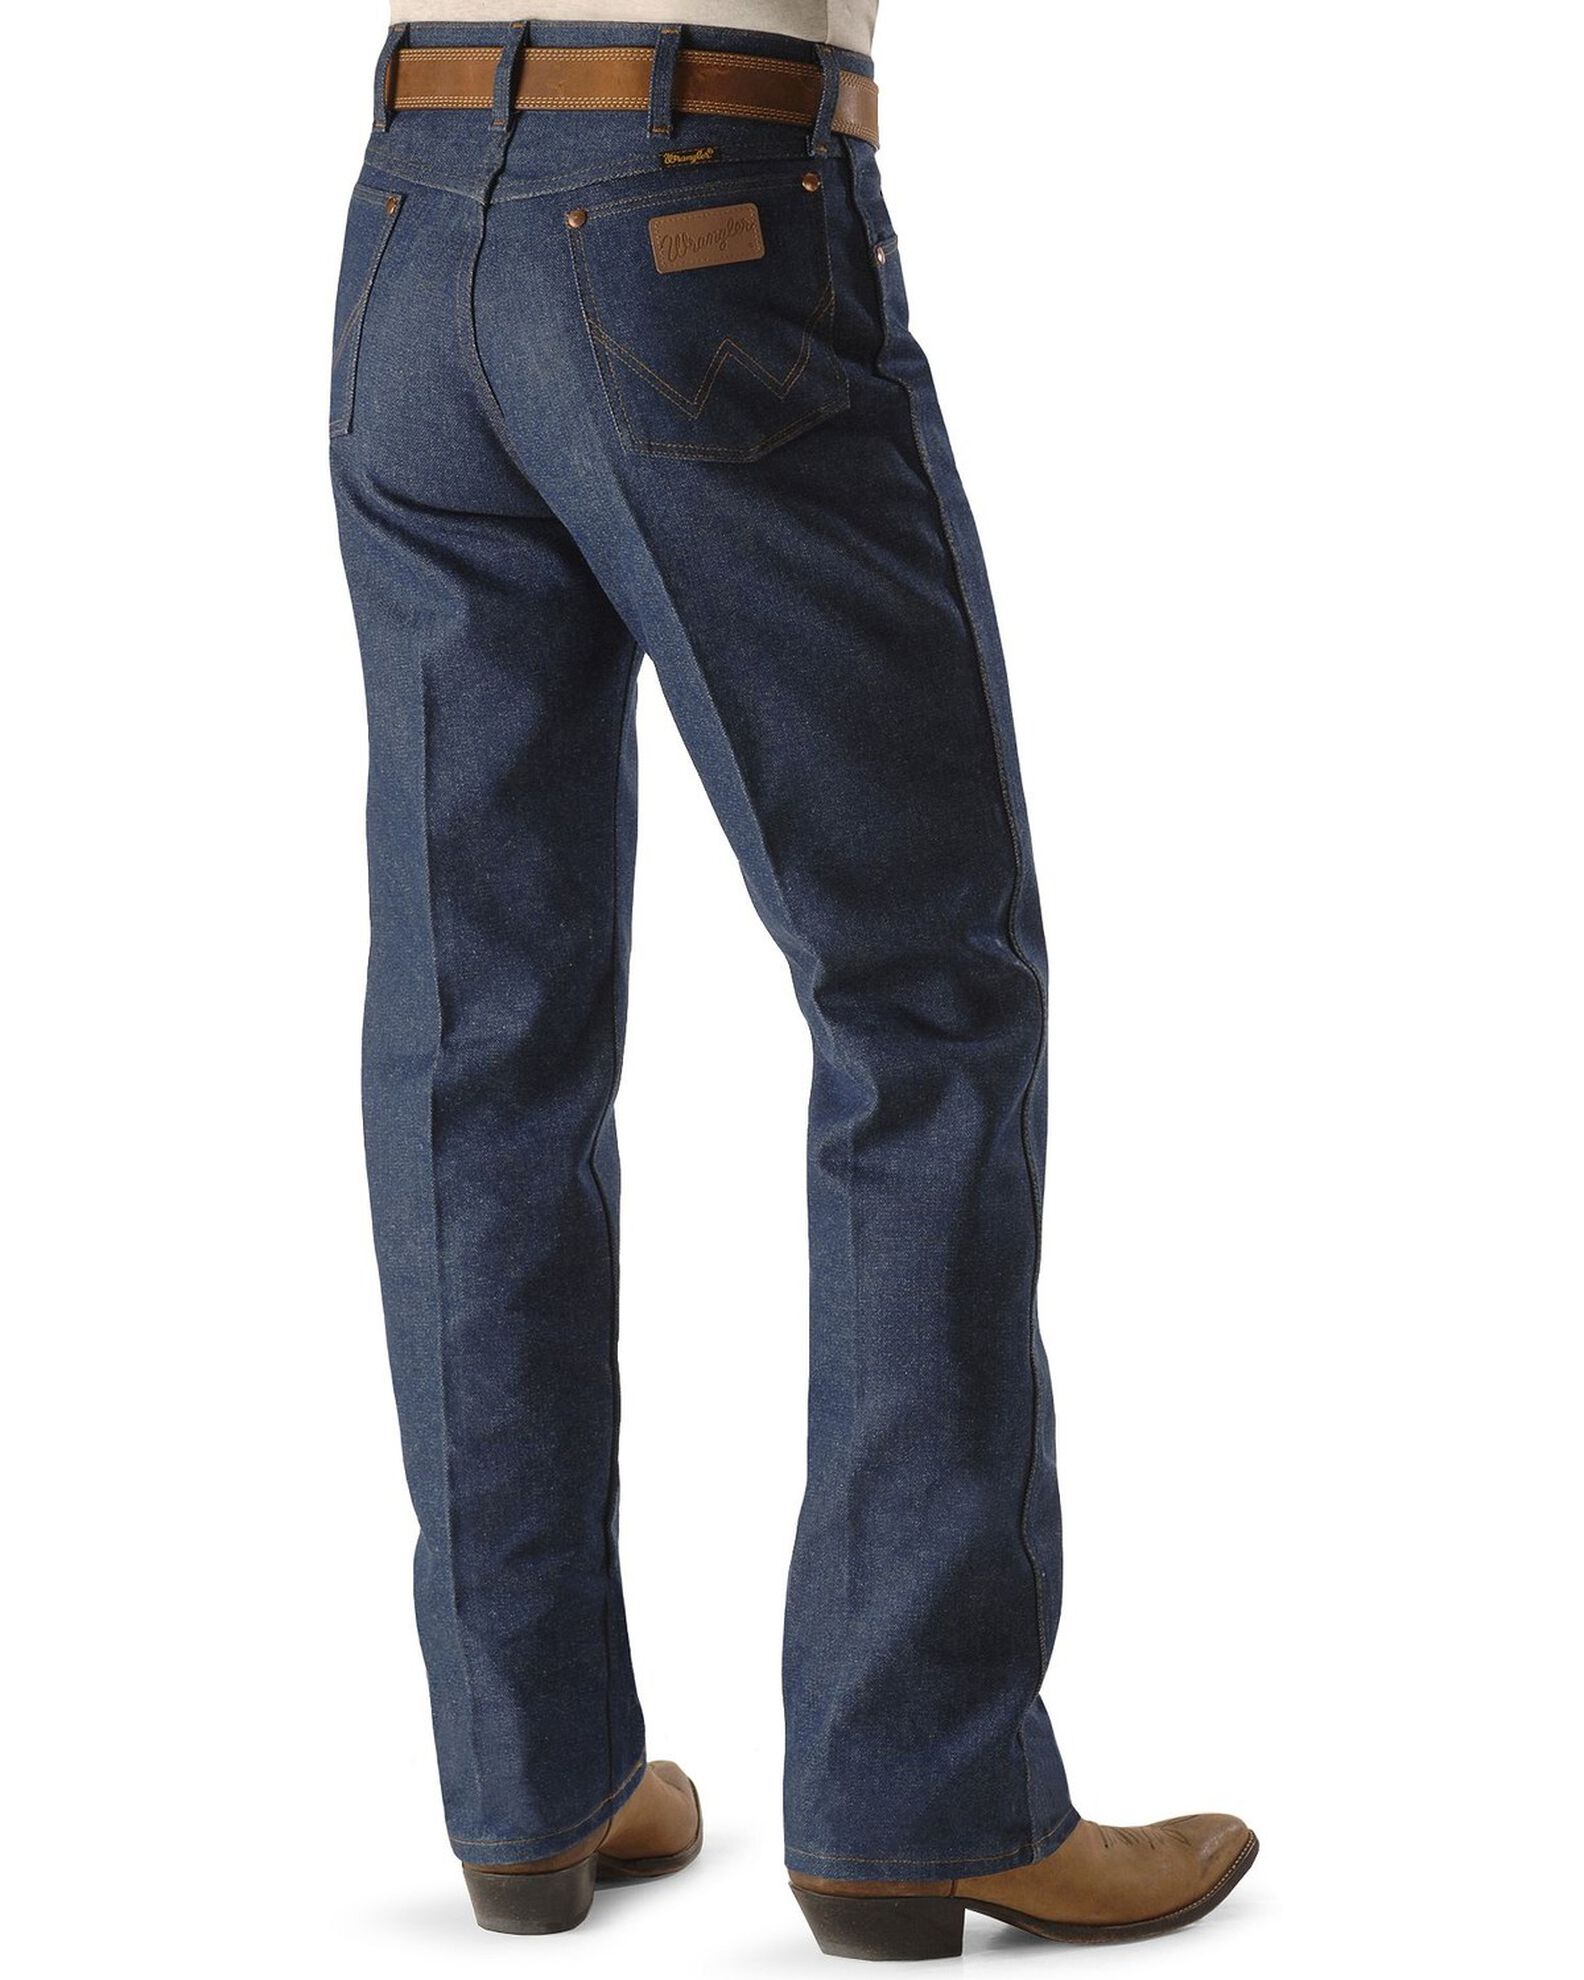 Wrangler Men's Rigid Cowboy Cut Original Fit Dress Jeans | Boot Barn